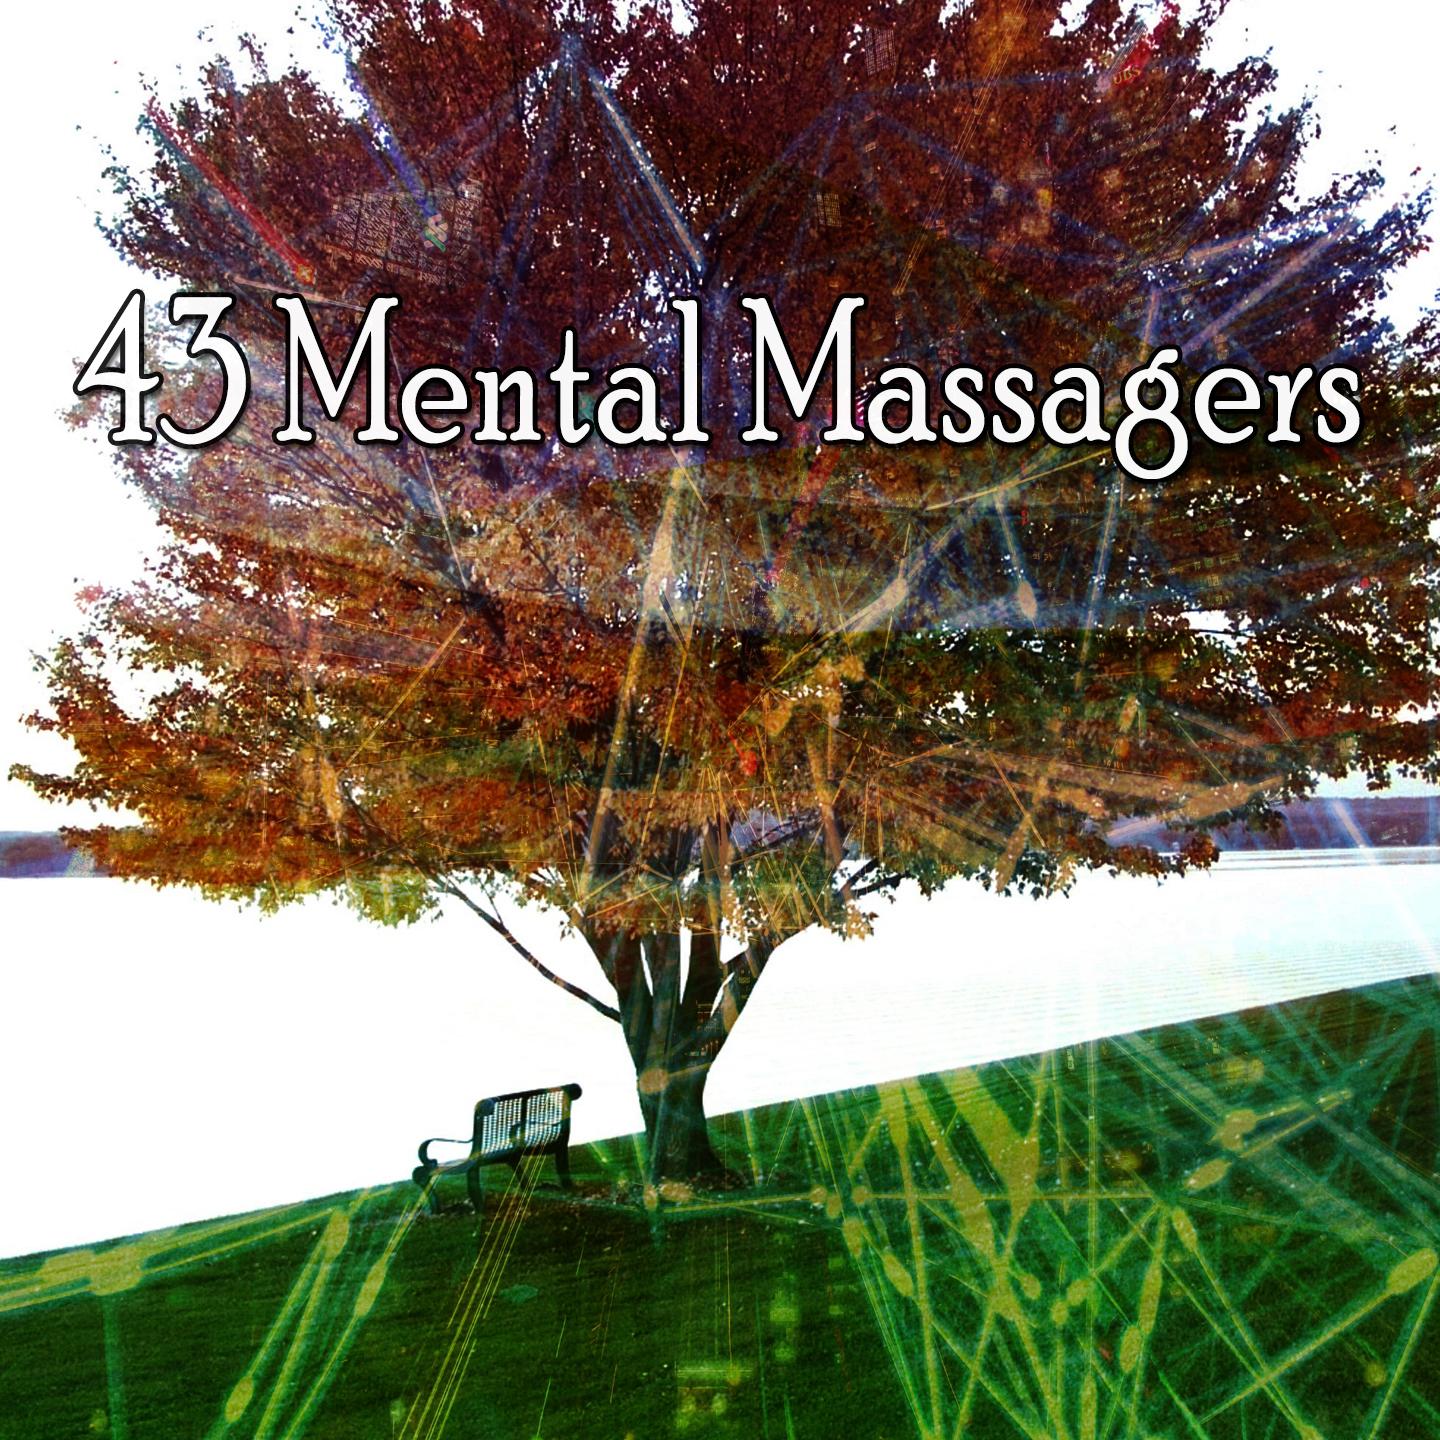 43 Mental Massagers